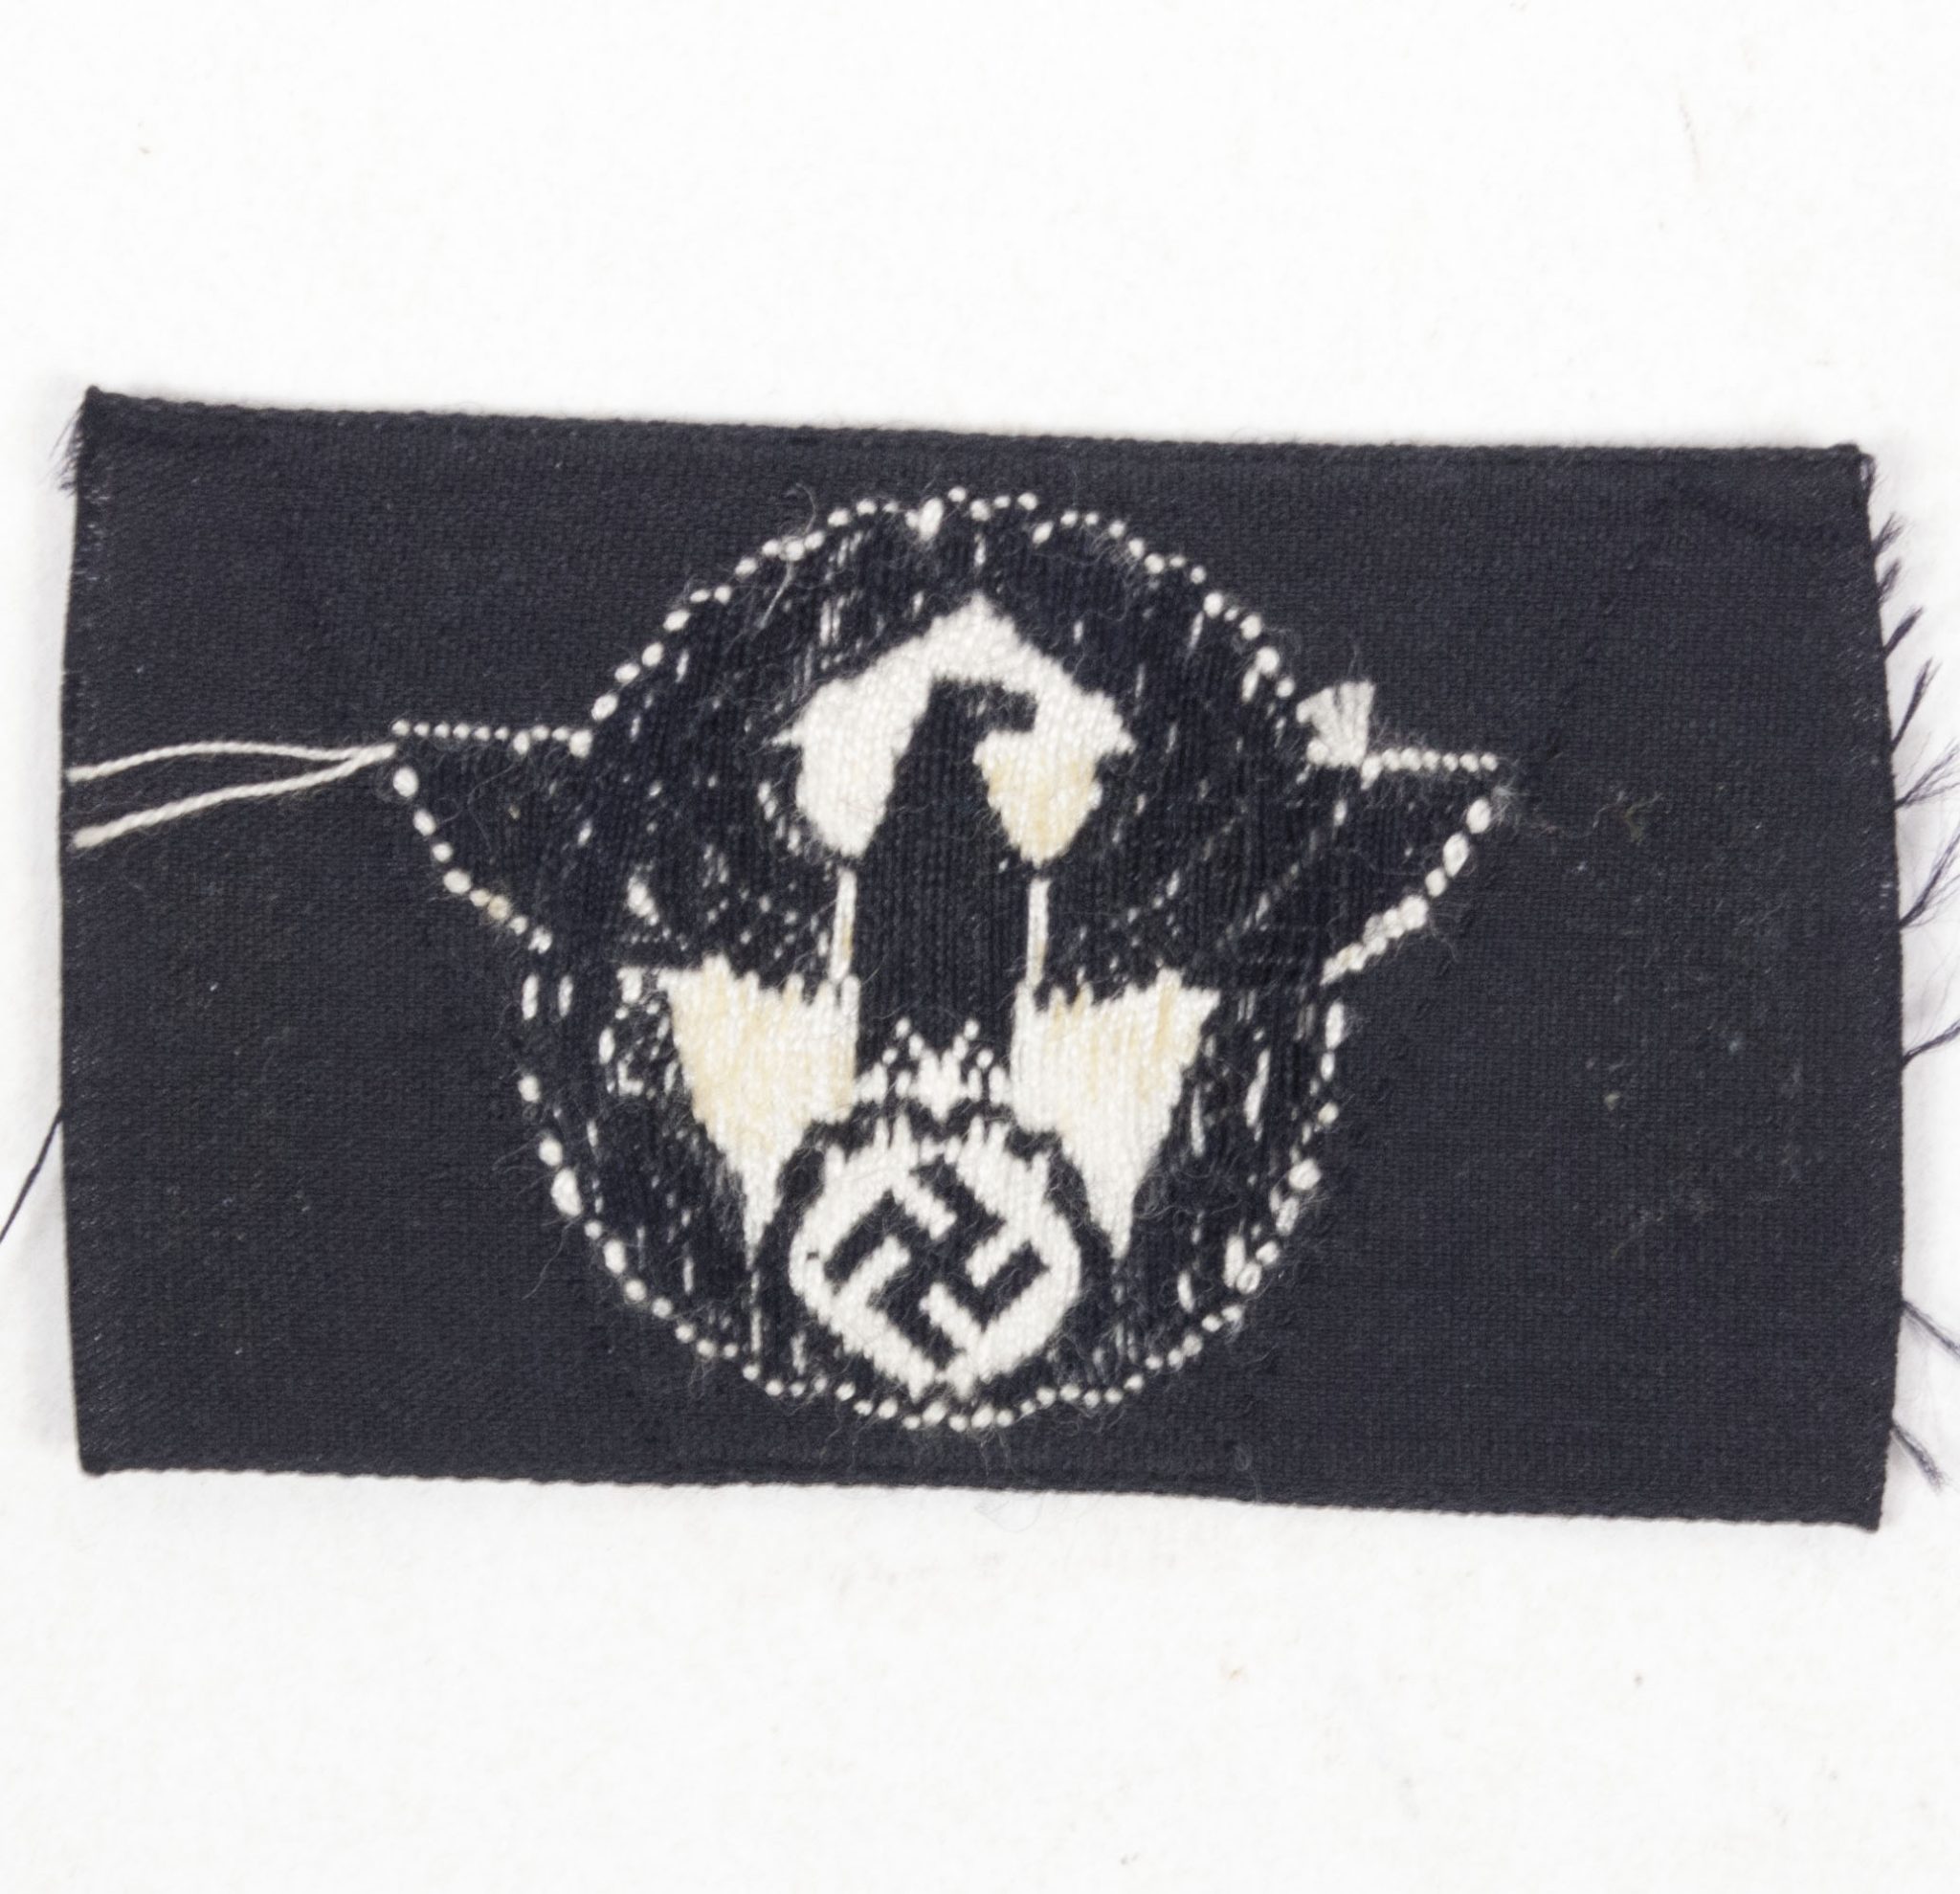 WWII Polizei sidecap insignia